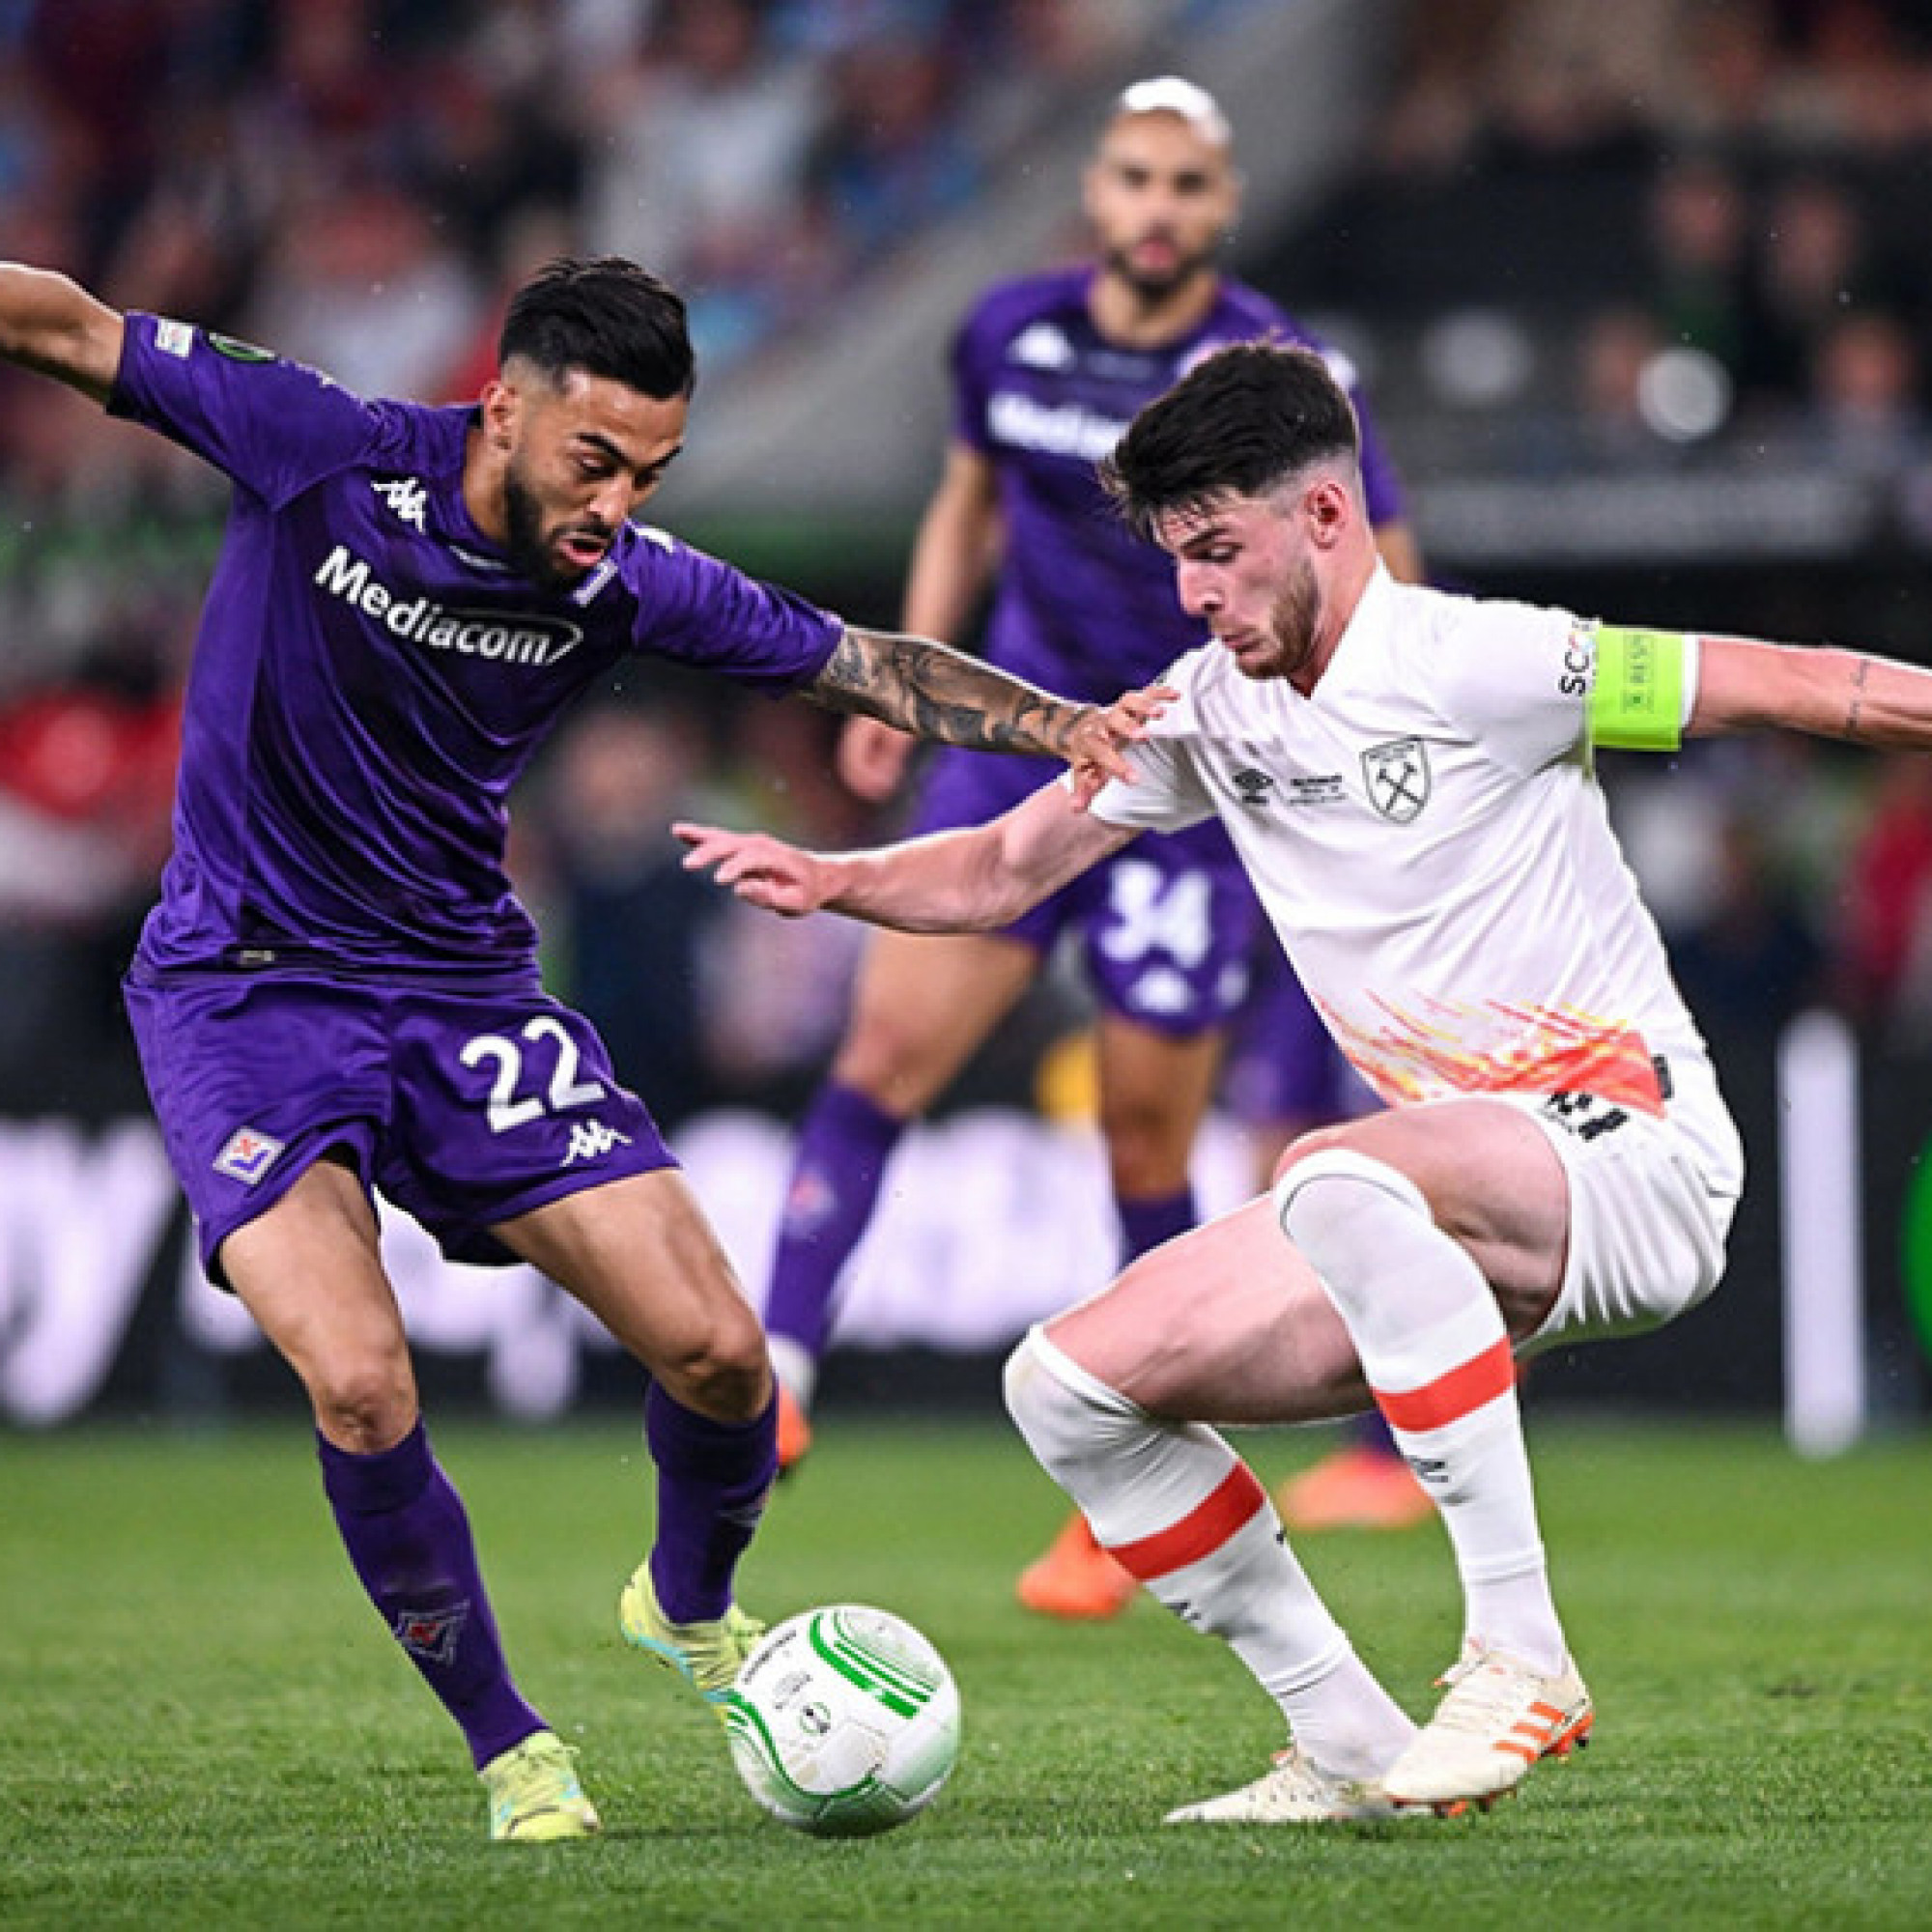  - Kết quả bóng đá Fiorentina - West Ham: Rượt đuổi 3 bàn, vỡ òa phút 90 (Conference League)